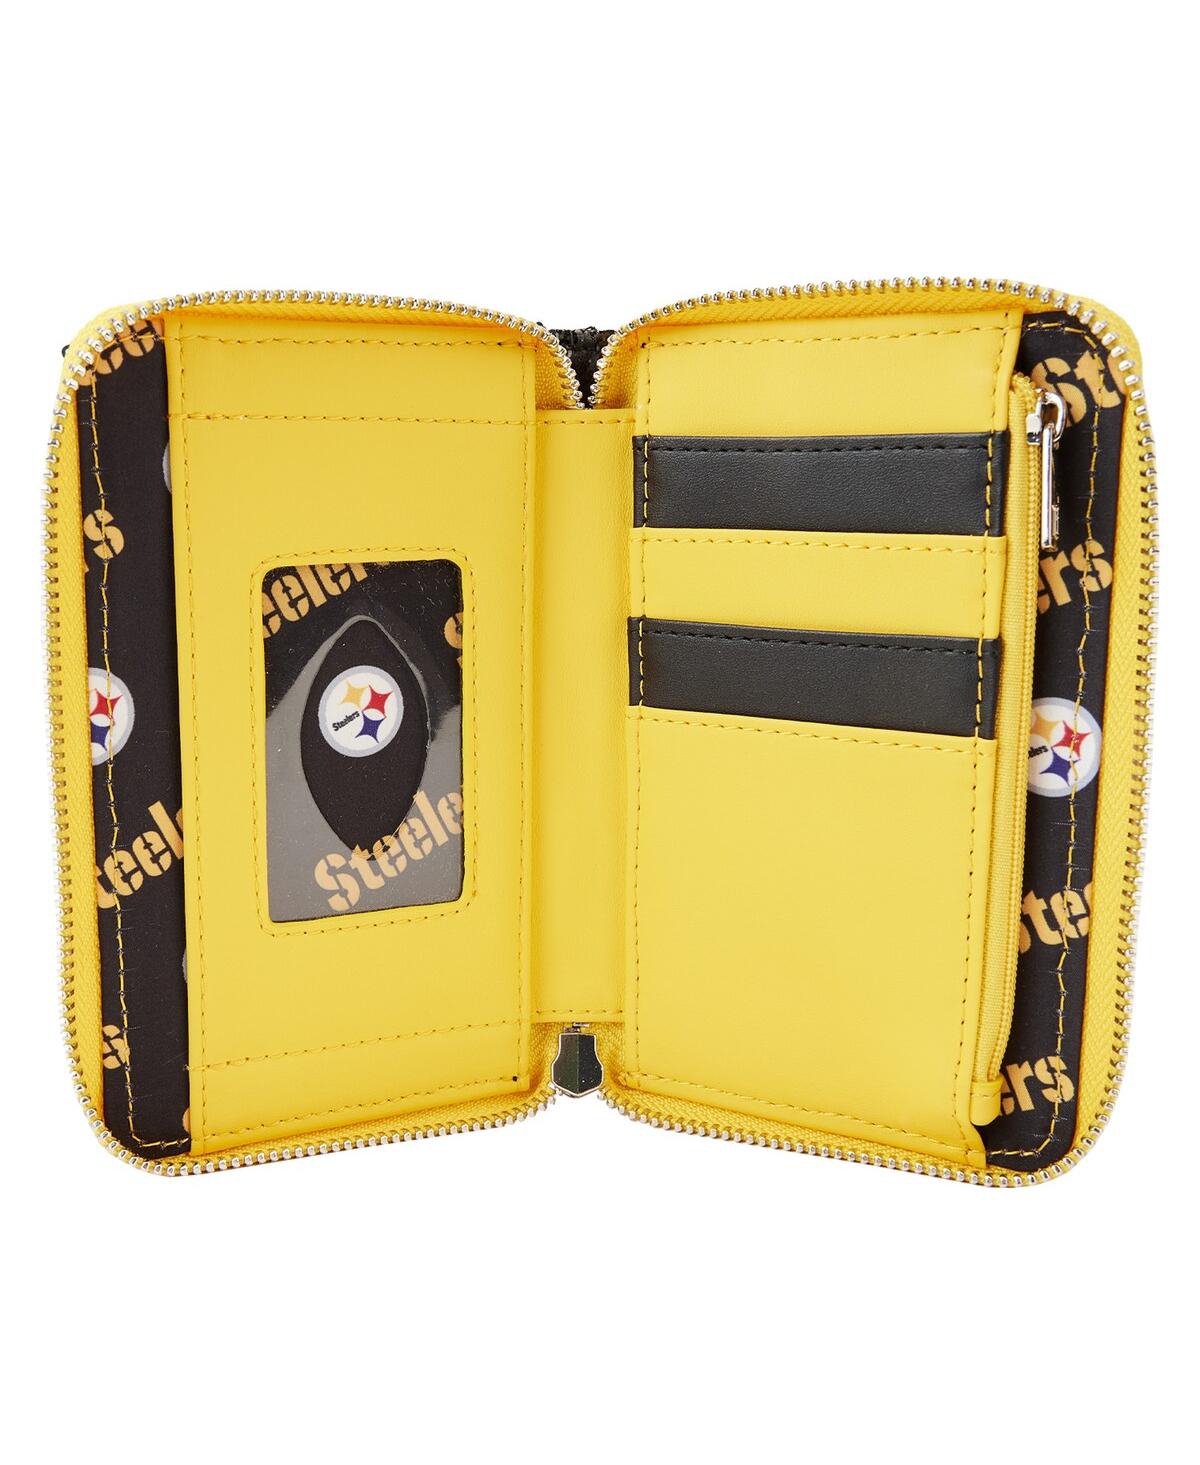 Shop Loungefly Women's  Pittsburgh Steelers Sequin Zip-around Wallet In Black